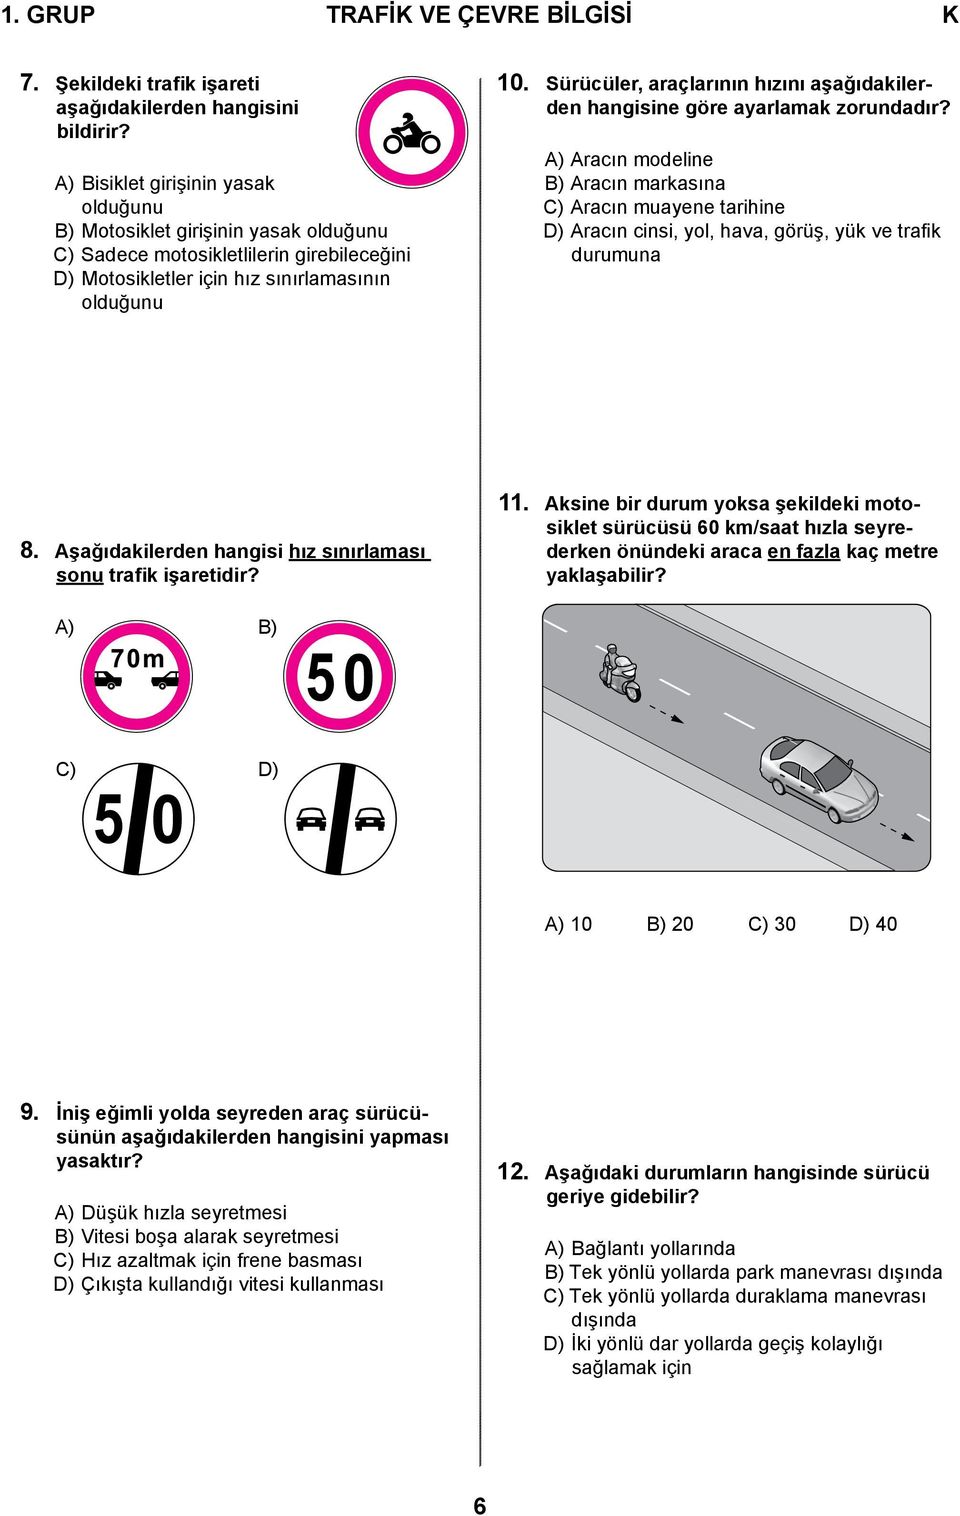 Sürücüler, araçlarının hızını aşağıdakilerden hangisine göre ayarlamak zorundadır?